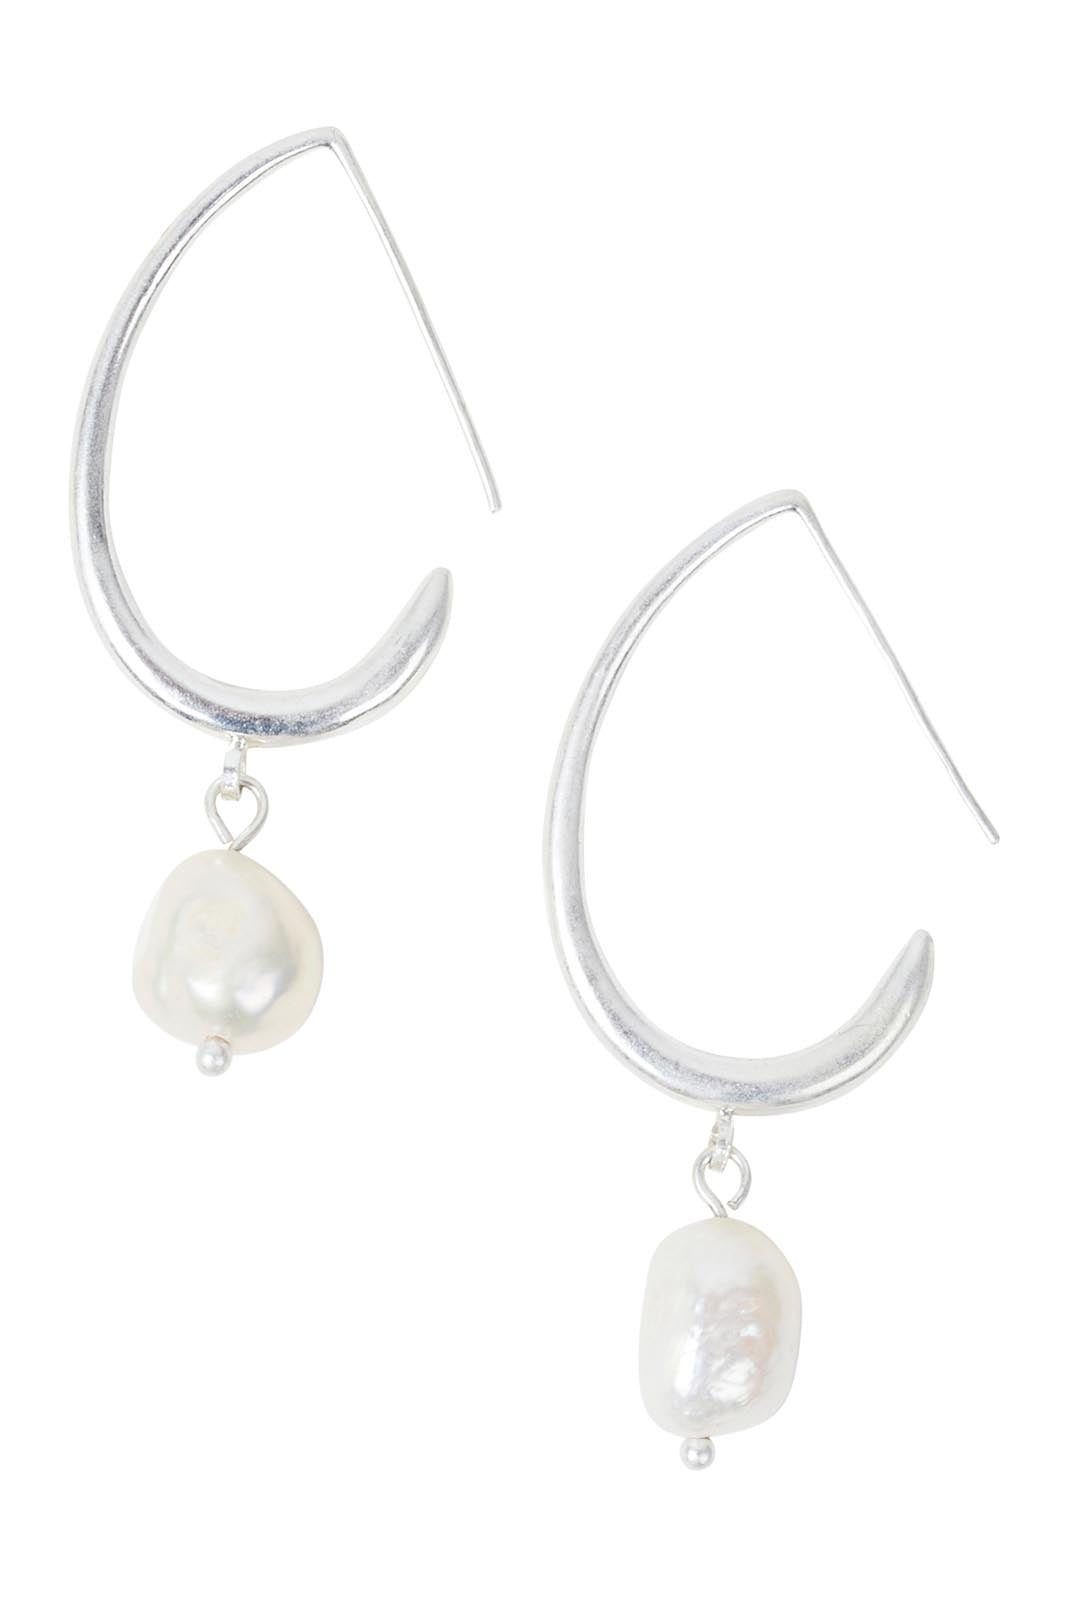 Capella Dainty Earring - Silver - eb&ive Earring